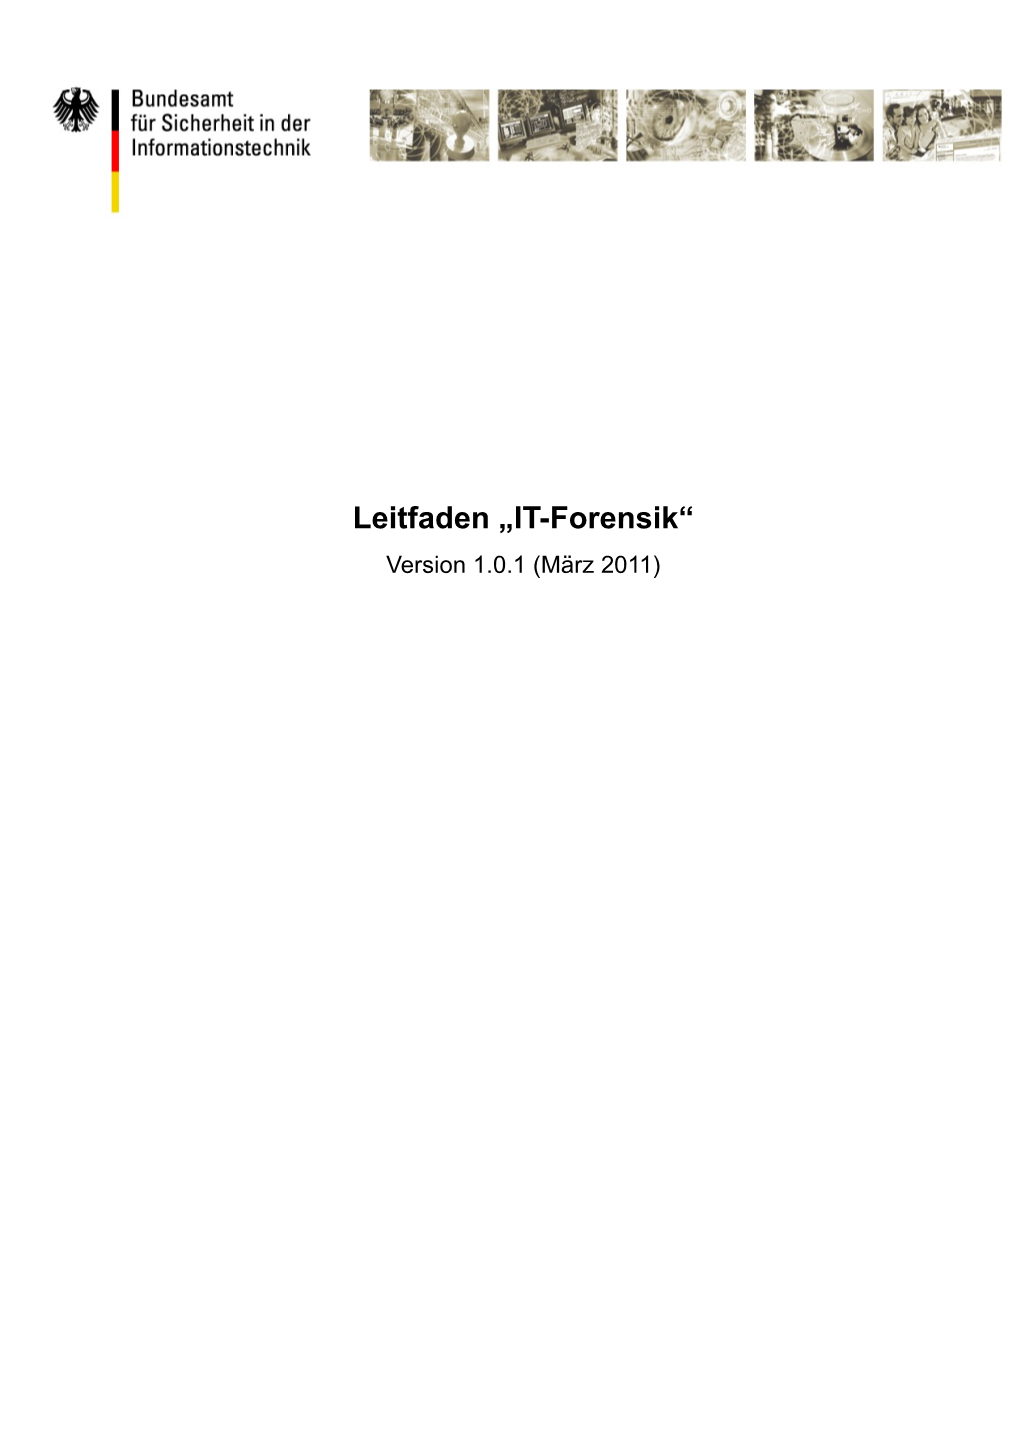 Leitfaden IT-Forensik Notation